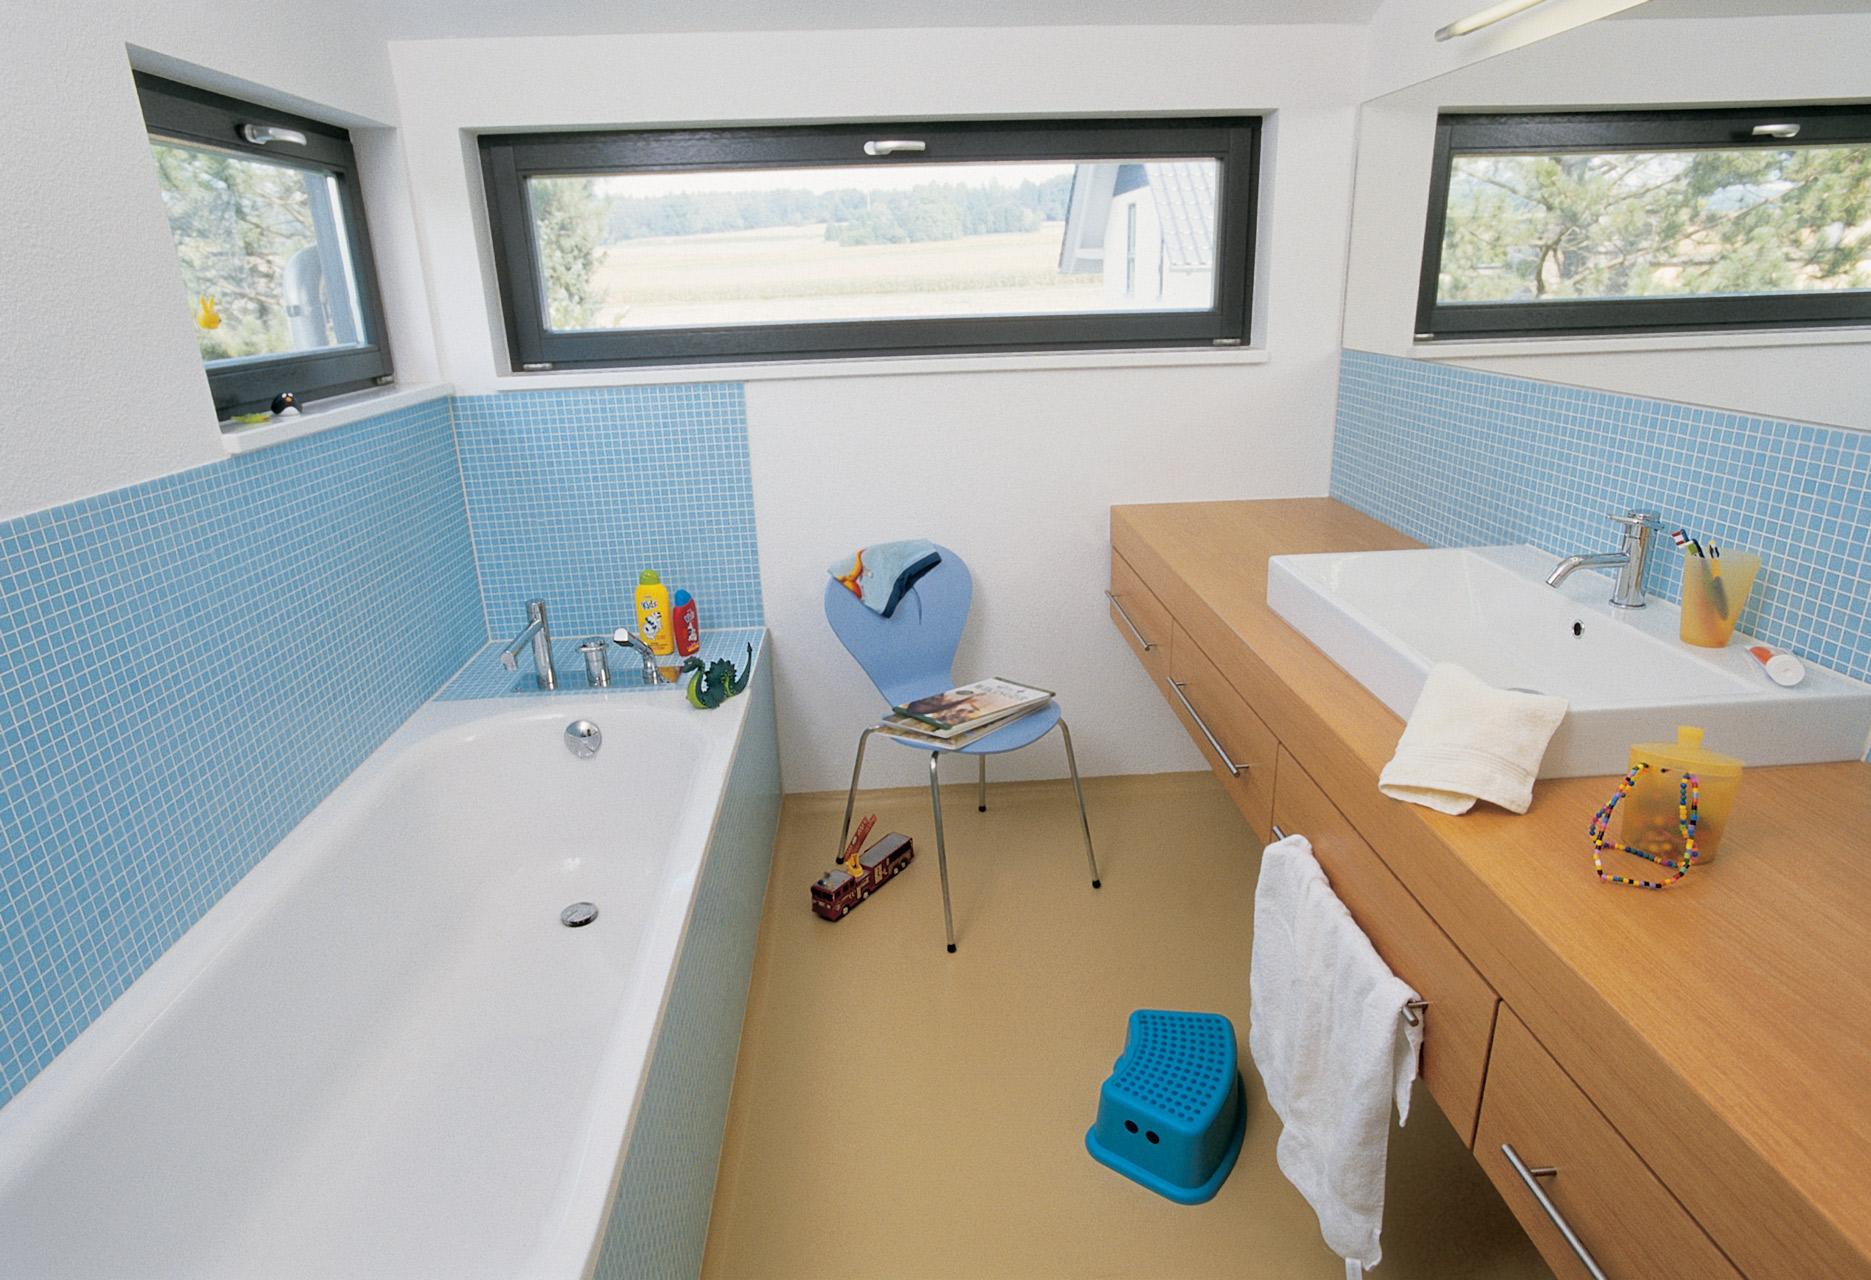 Salle de bain familiale avec carreaux de mosaïque bleue